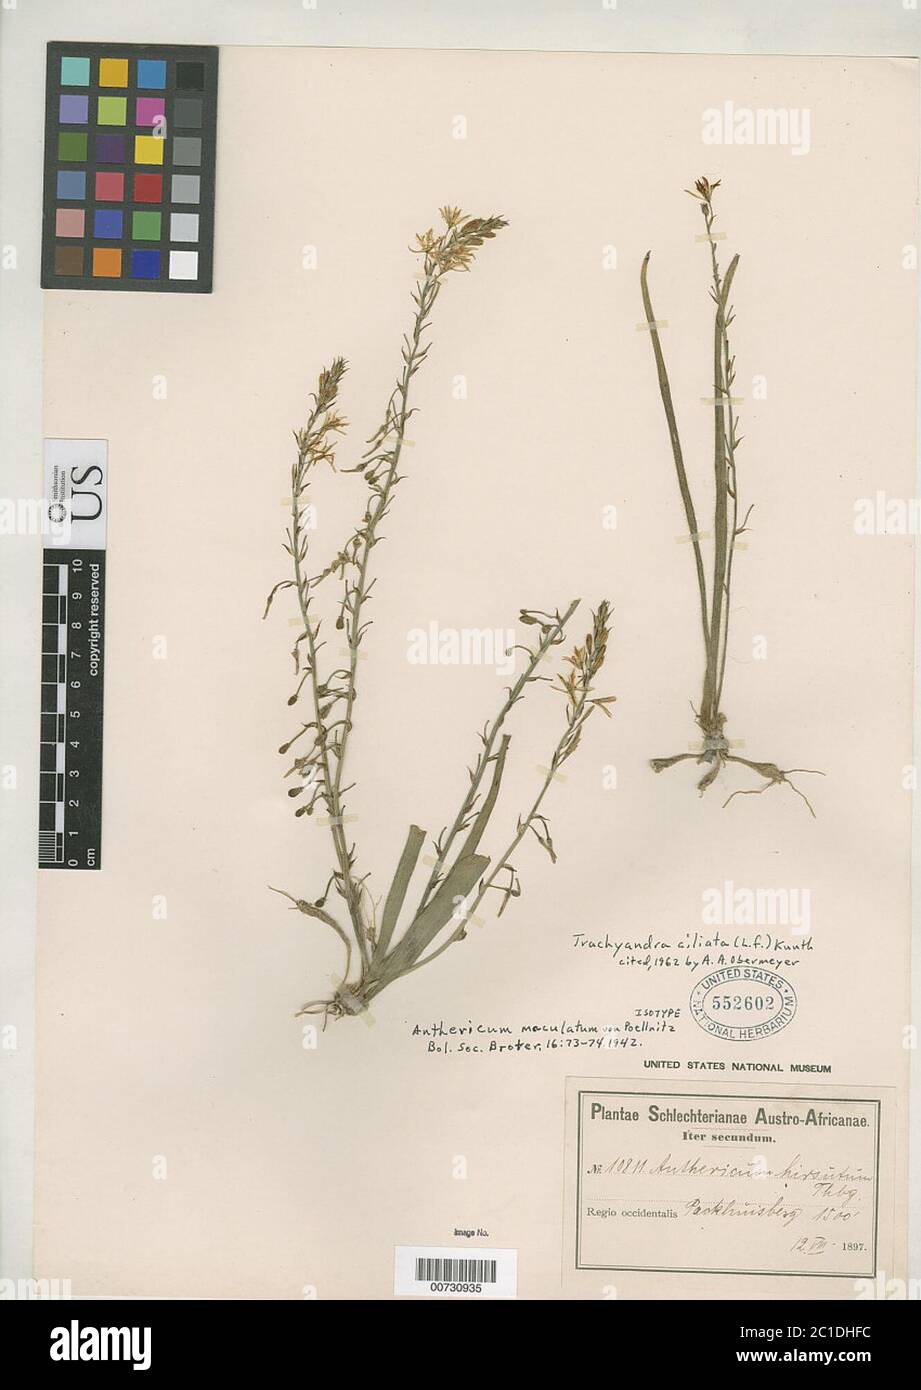 Anthericum maculatum Poelln Anthericum maculatum Poelln. Stock Photo